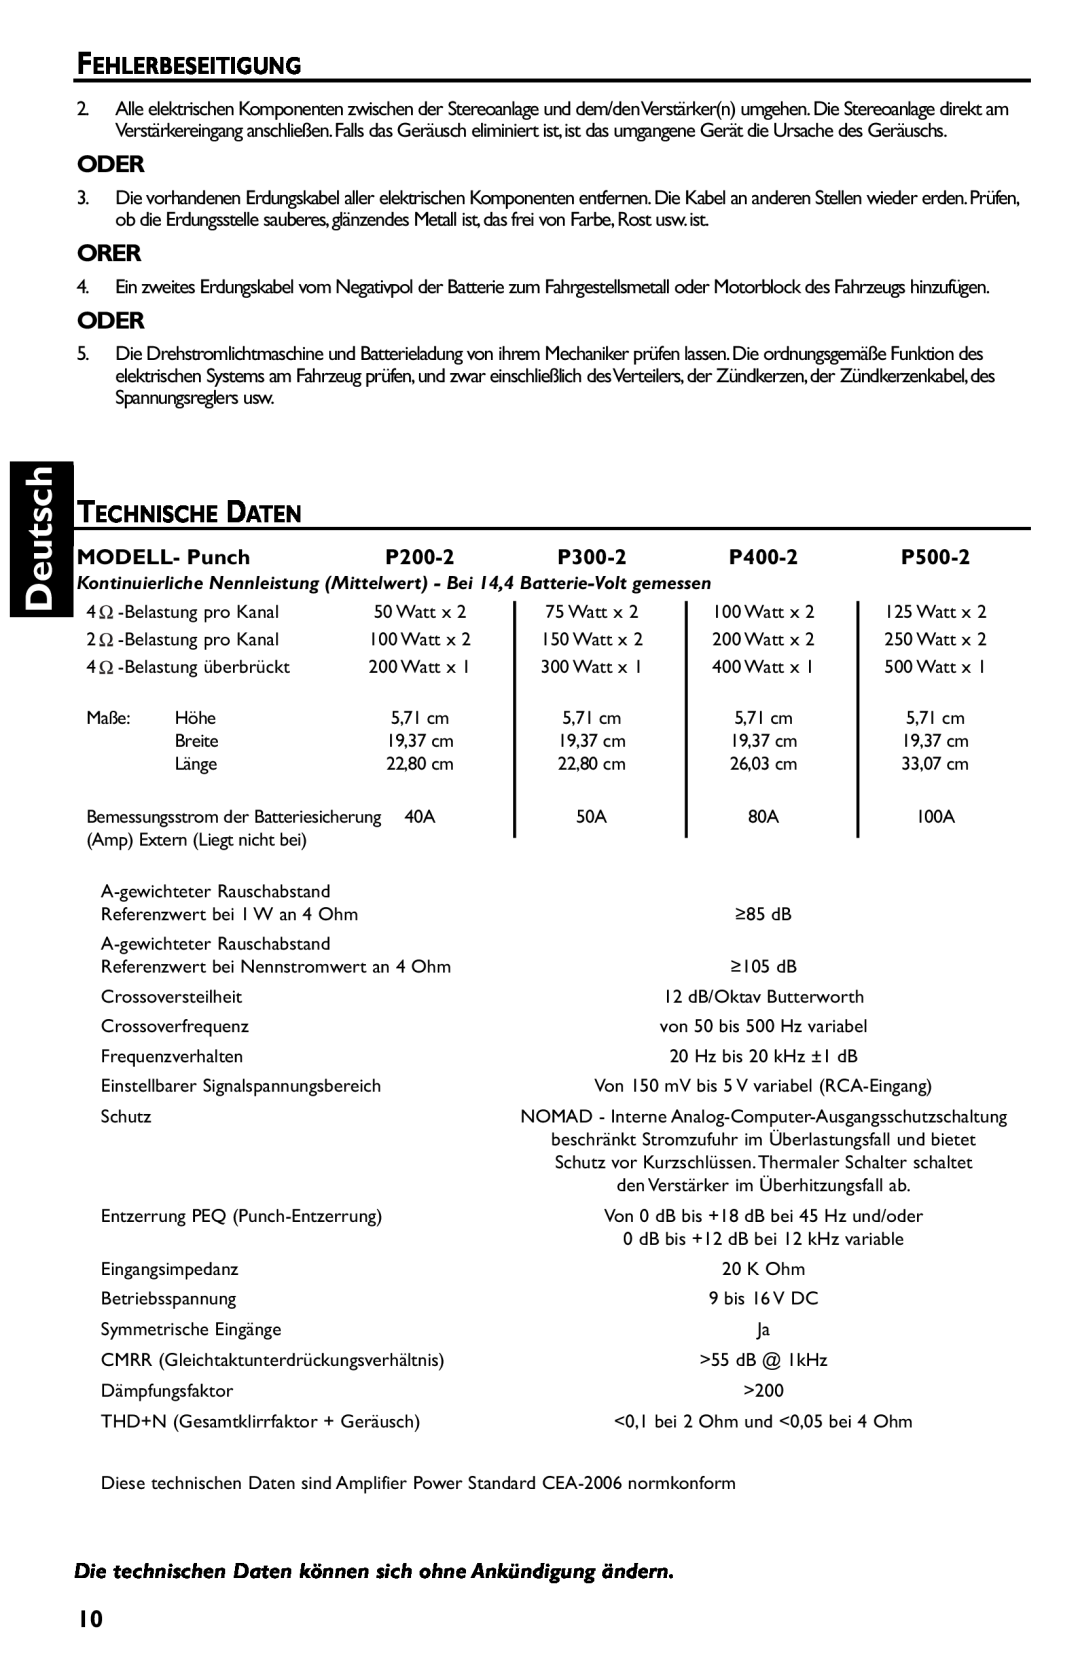 Rockford Fosgate p3002 manual Deutsch, Fehlerbeseitigung, Oder, Orer, Technische Daten, P500-2 